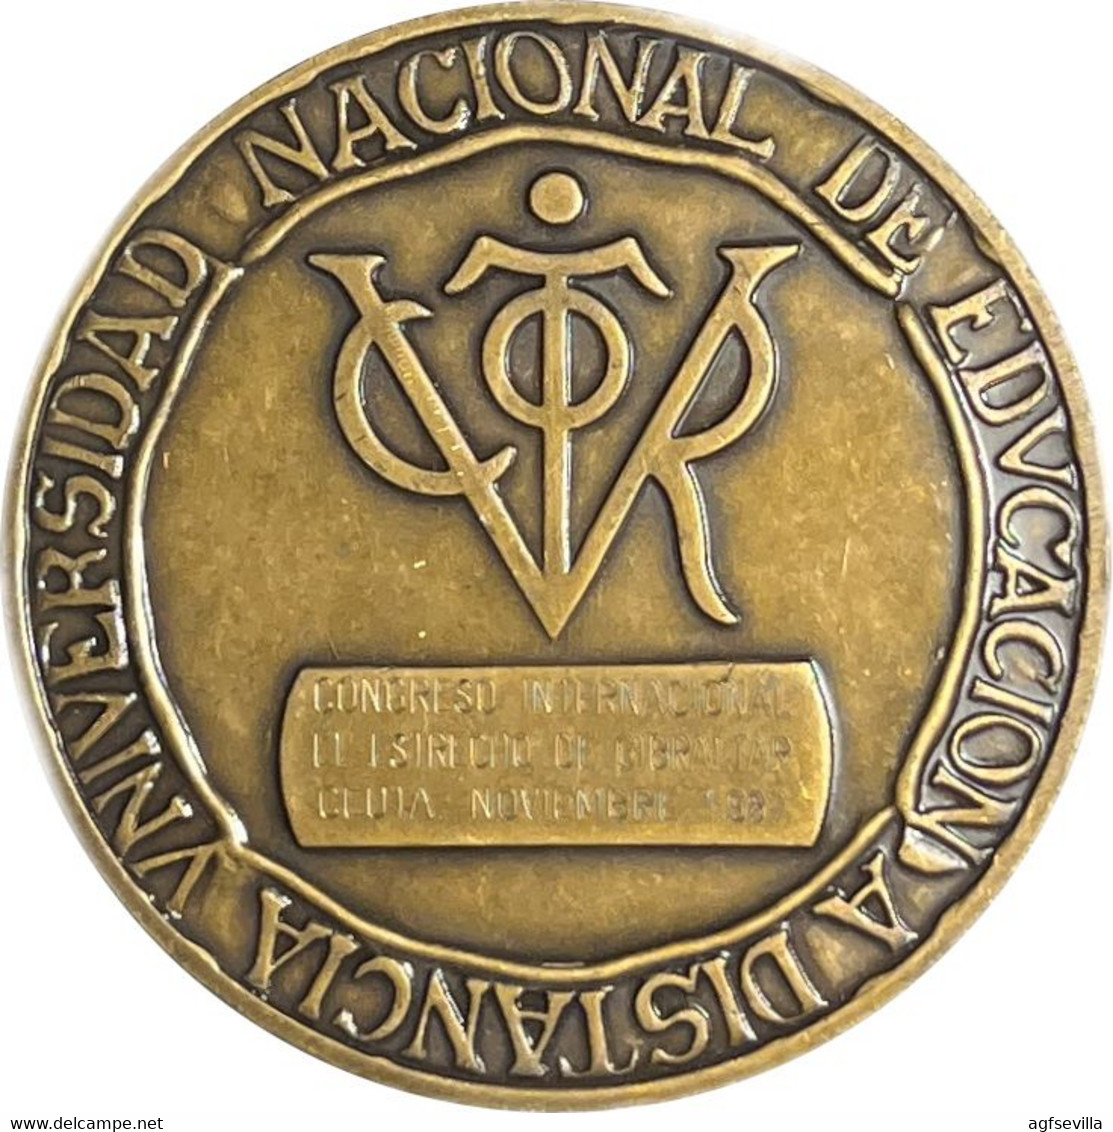 ESPAÑA. MEDALLA UNIVERSIDAD NACIONAL DE EDUCACIÓN A DISTANCIA. 1.987. BRONCE. ESPAGNE. SPAIN MEDAL - Profesionales/De Sociedad